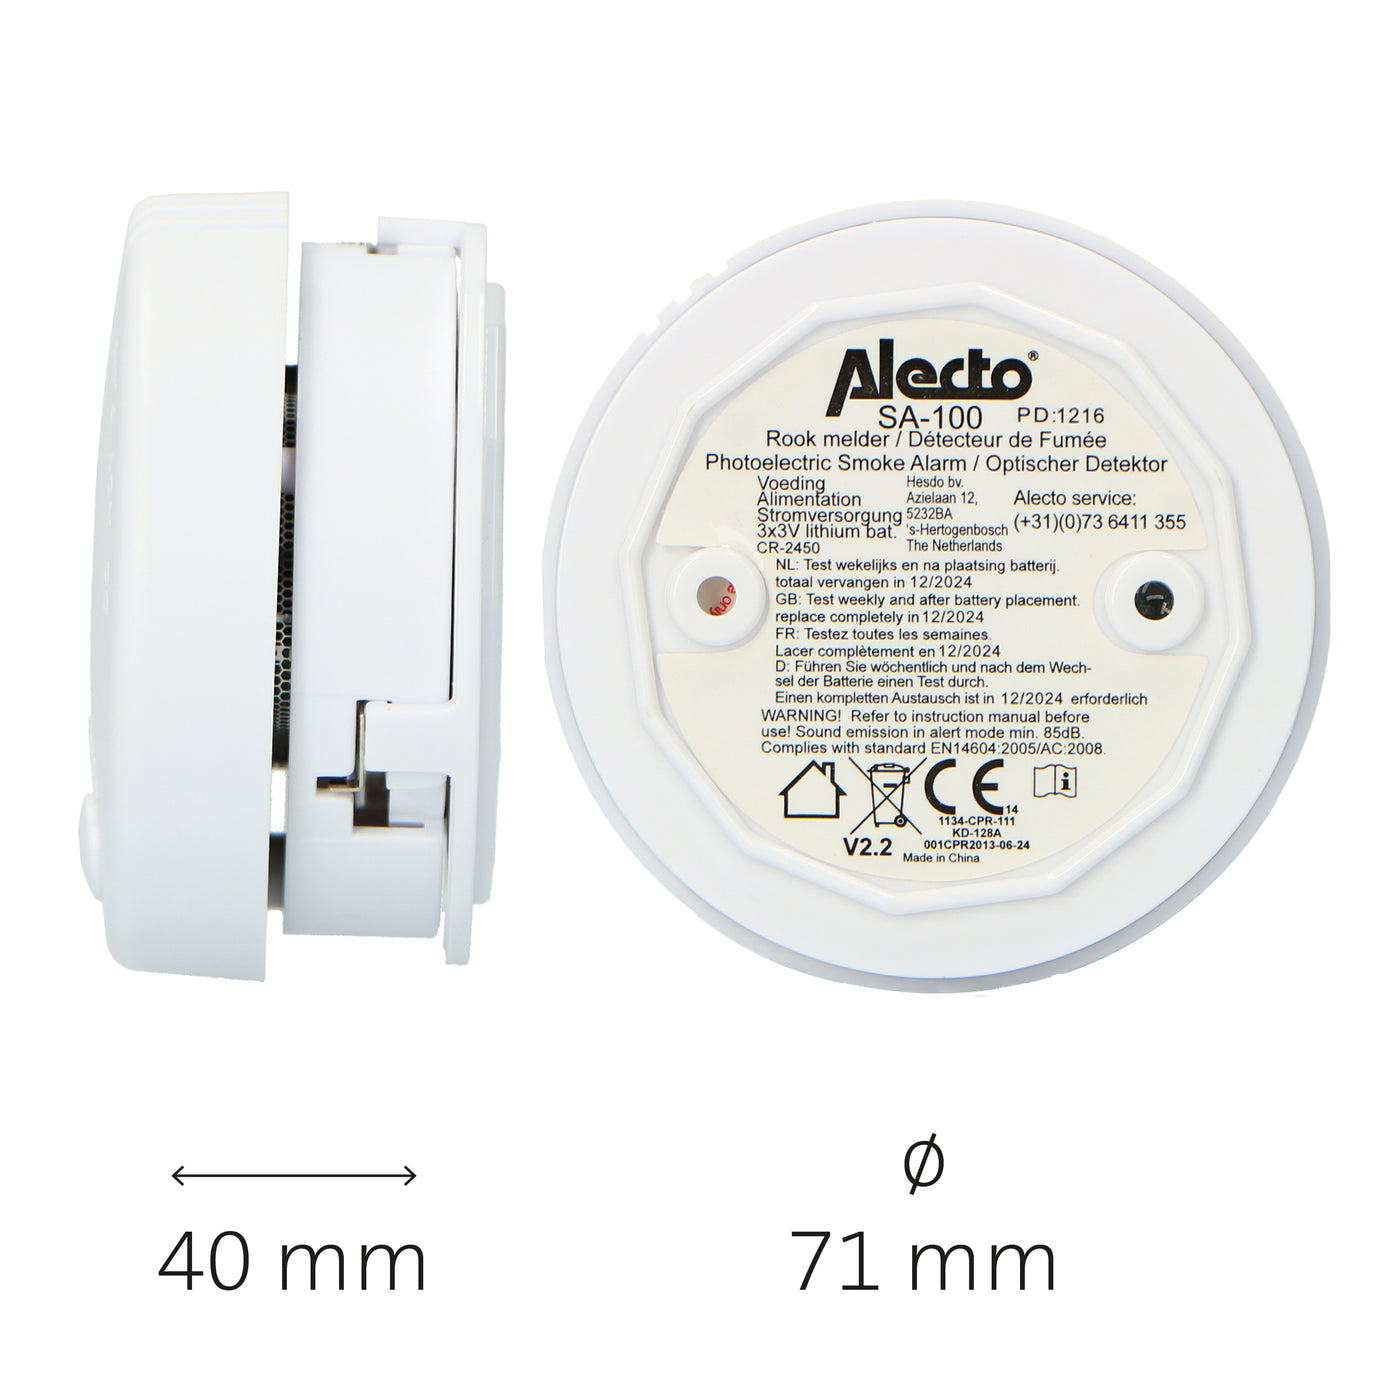 Alecto BPB19 - Boîte de prévention des incendies avec 2 mini détecteurs de fumée, 1 détecteur de monoxyde de carbone et 3 ensembles de montage magnétique